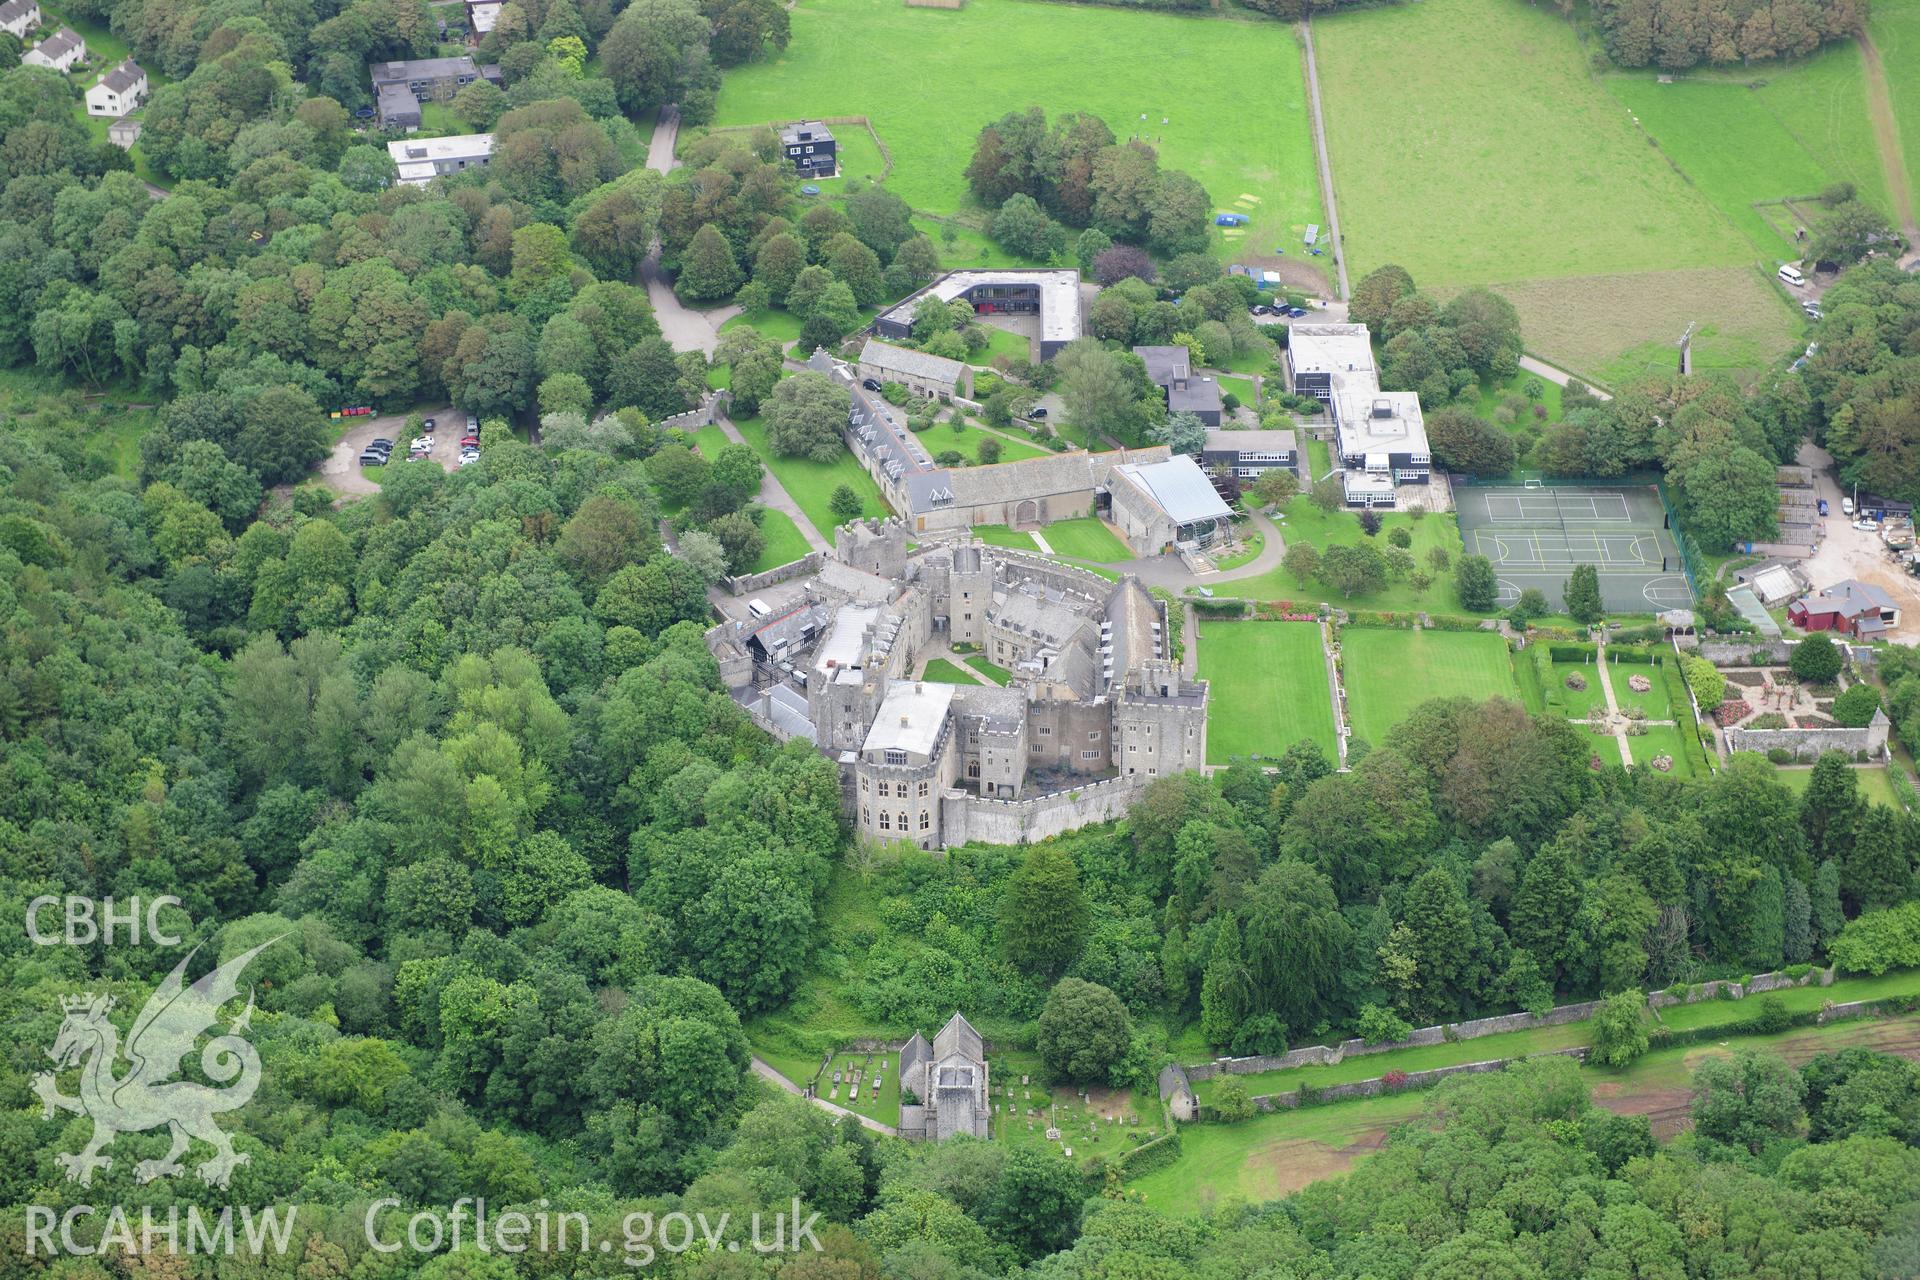 RCAHMW colour oblique photograph of St Donat's Castle. Taken by Toby Driver on 05/07/2012.